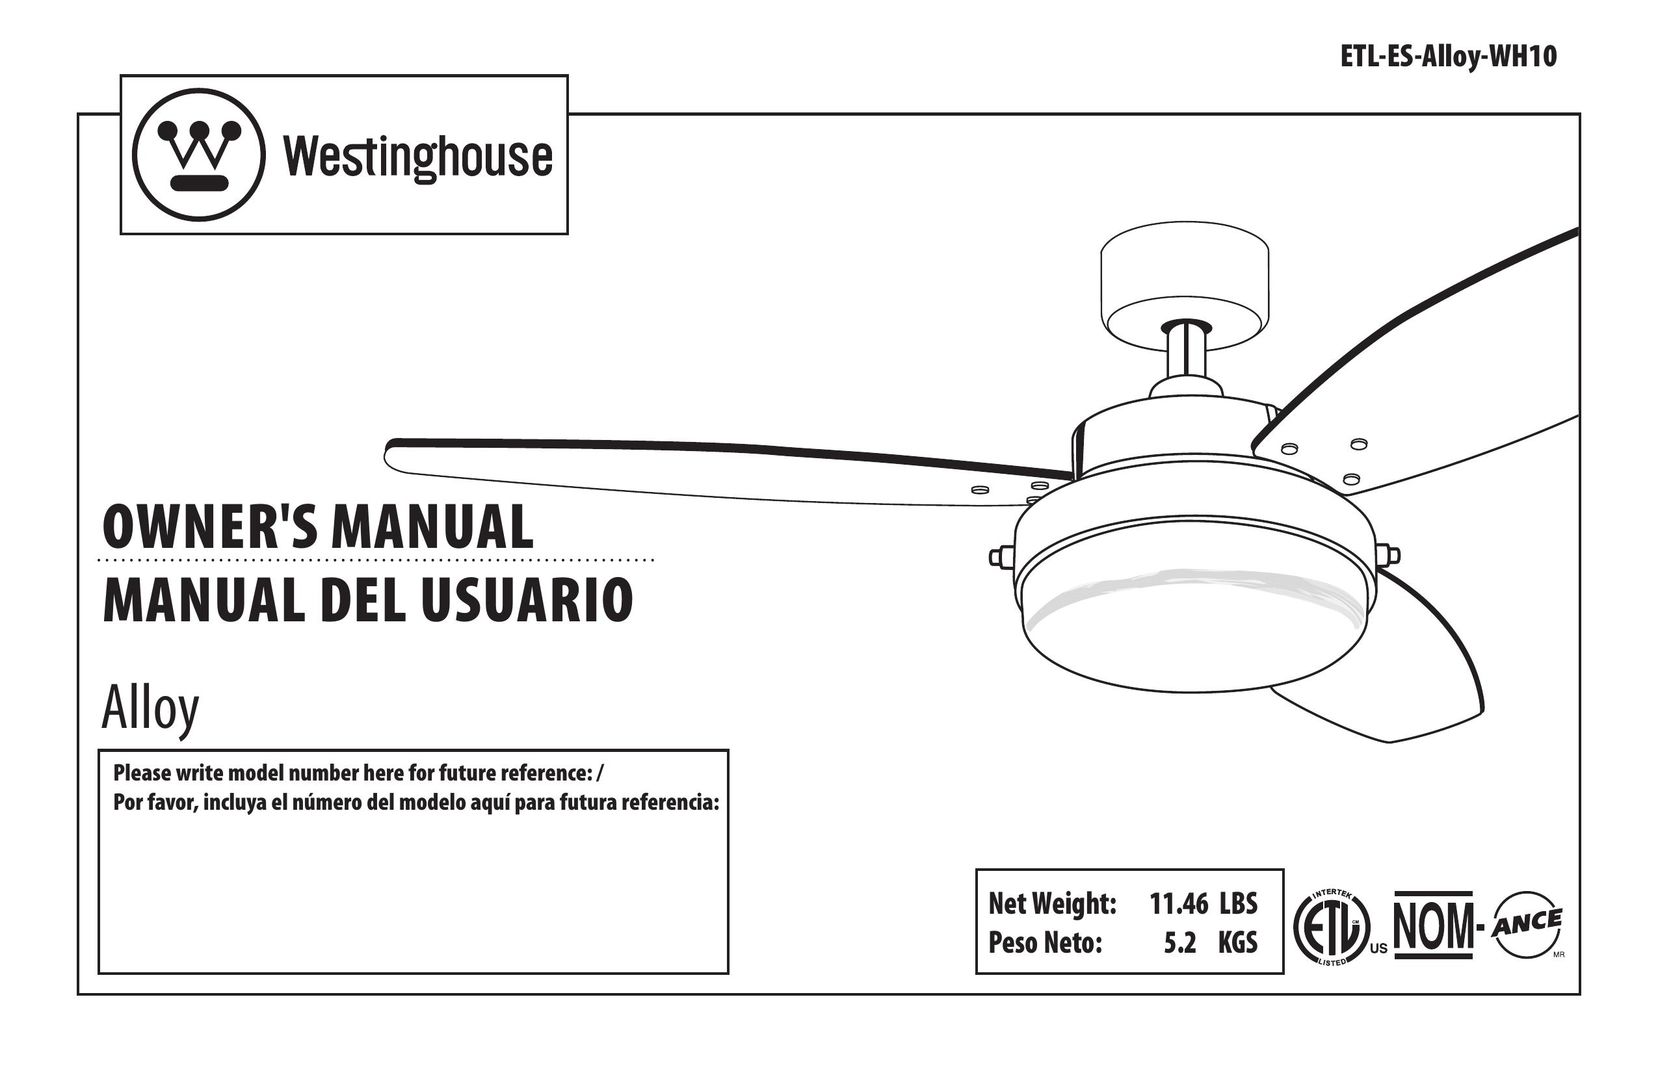 Westinghouse ETL Fan User Manual